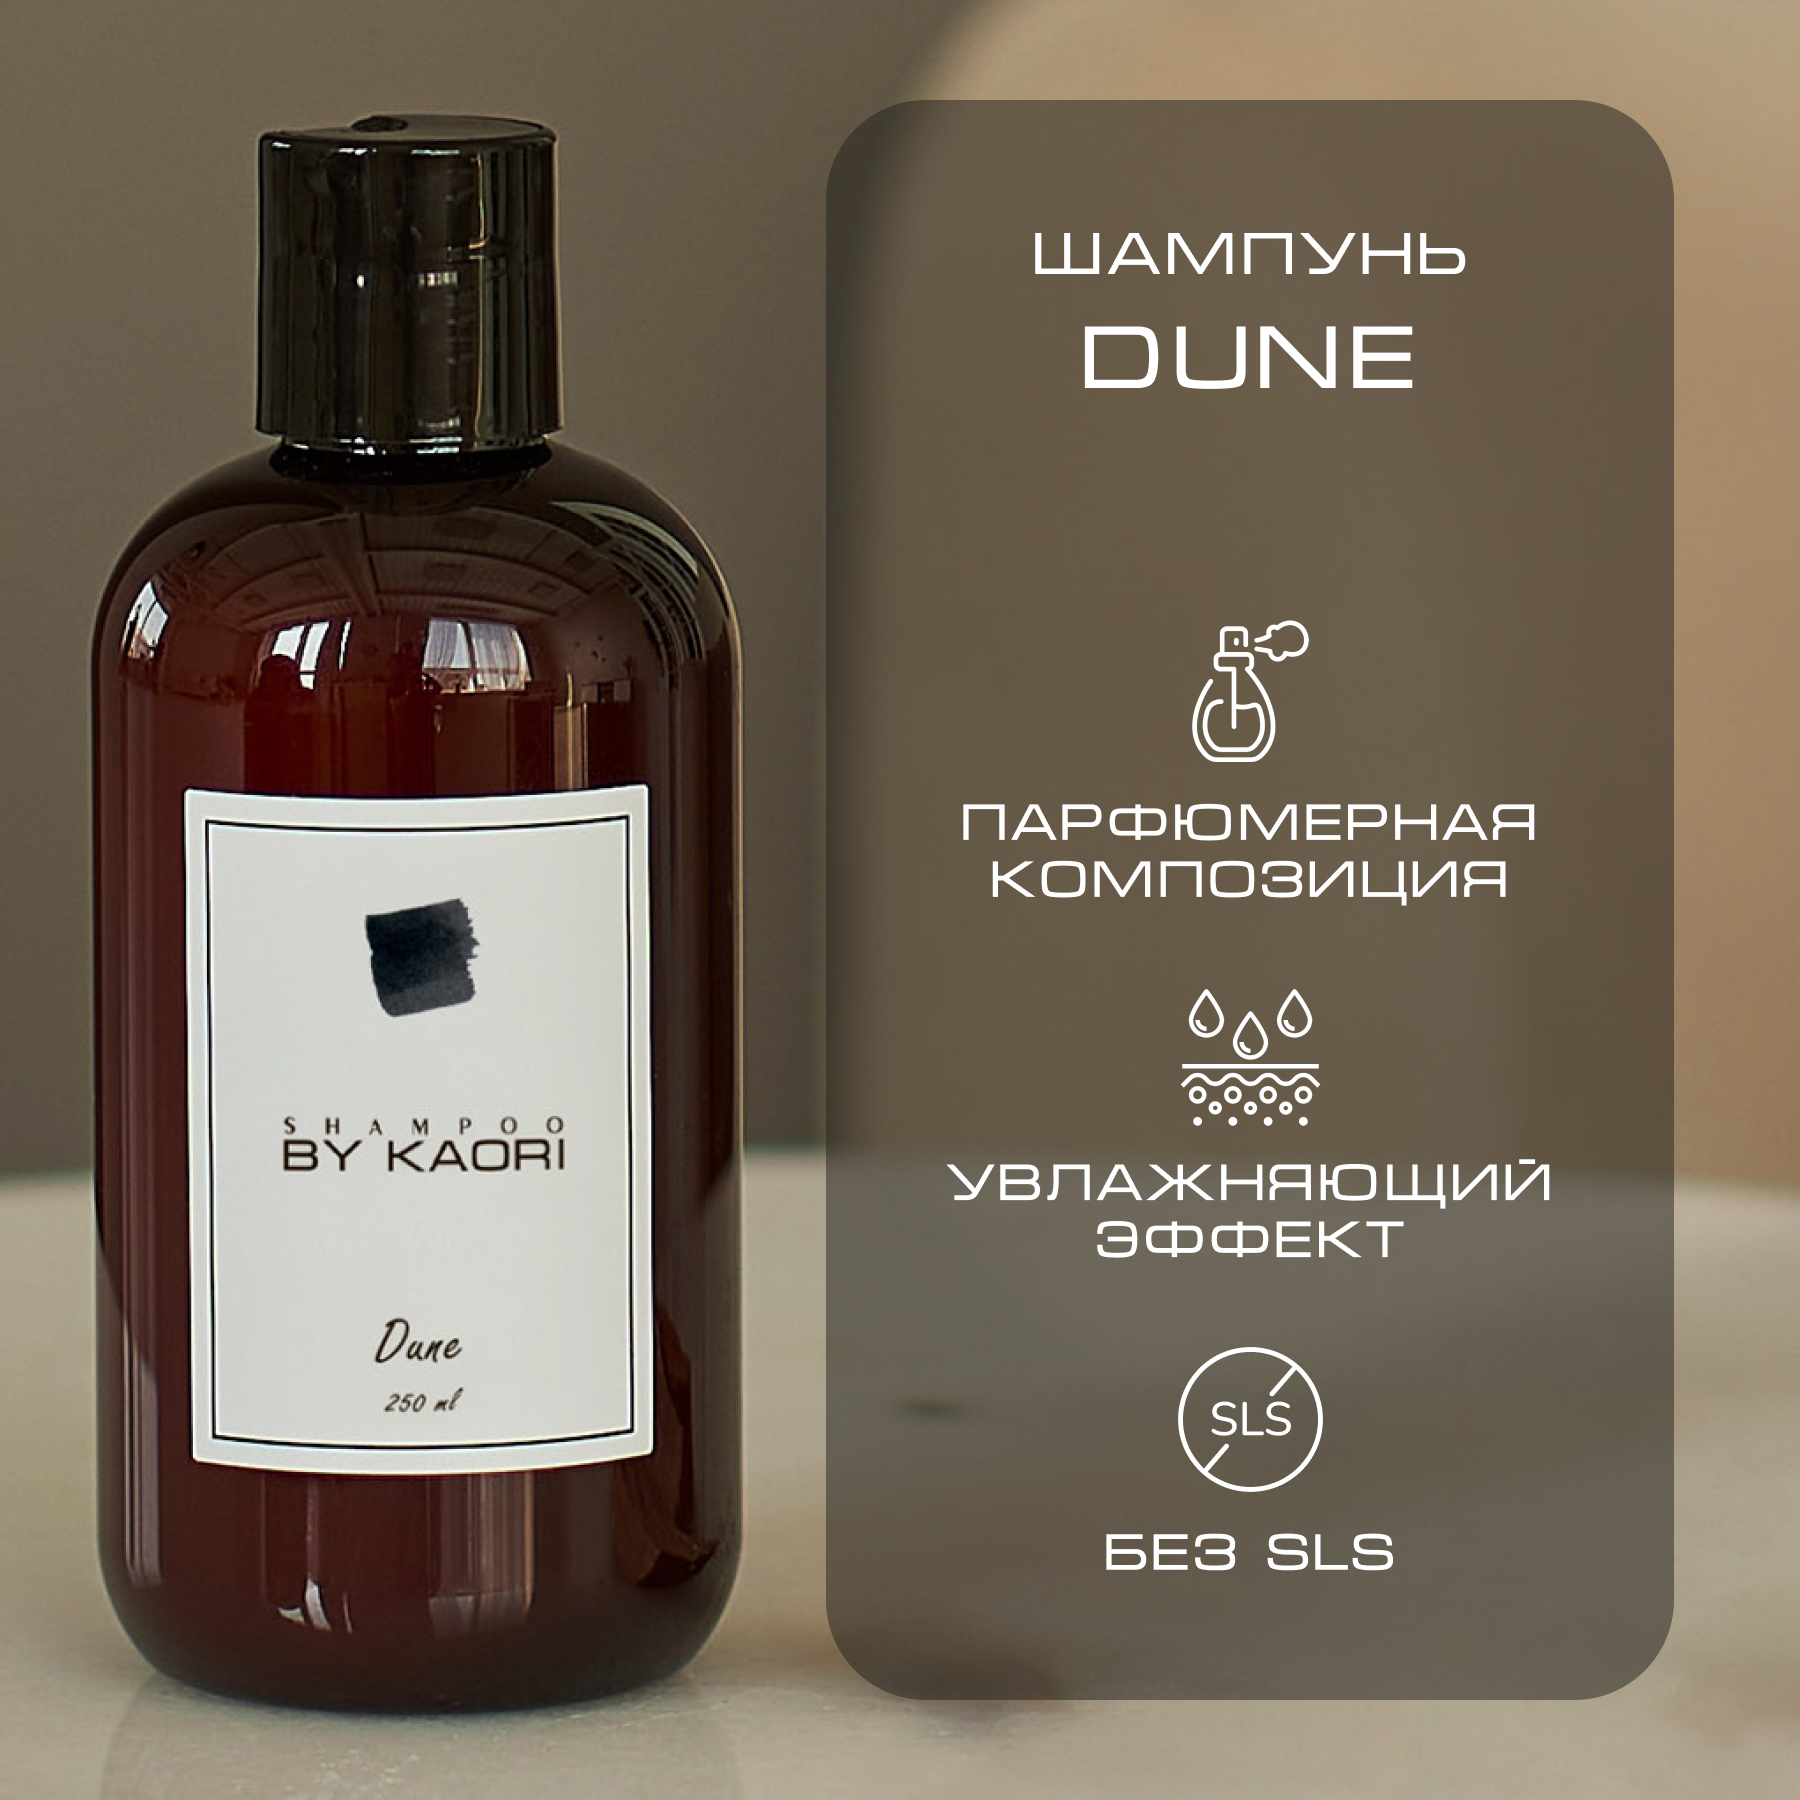 dune Шампунь для волос By Kaori бессульфатный парфюмированный, аромат Dune 250 мл